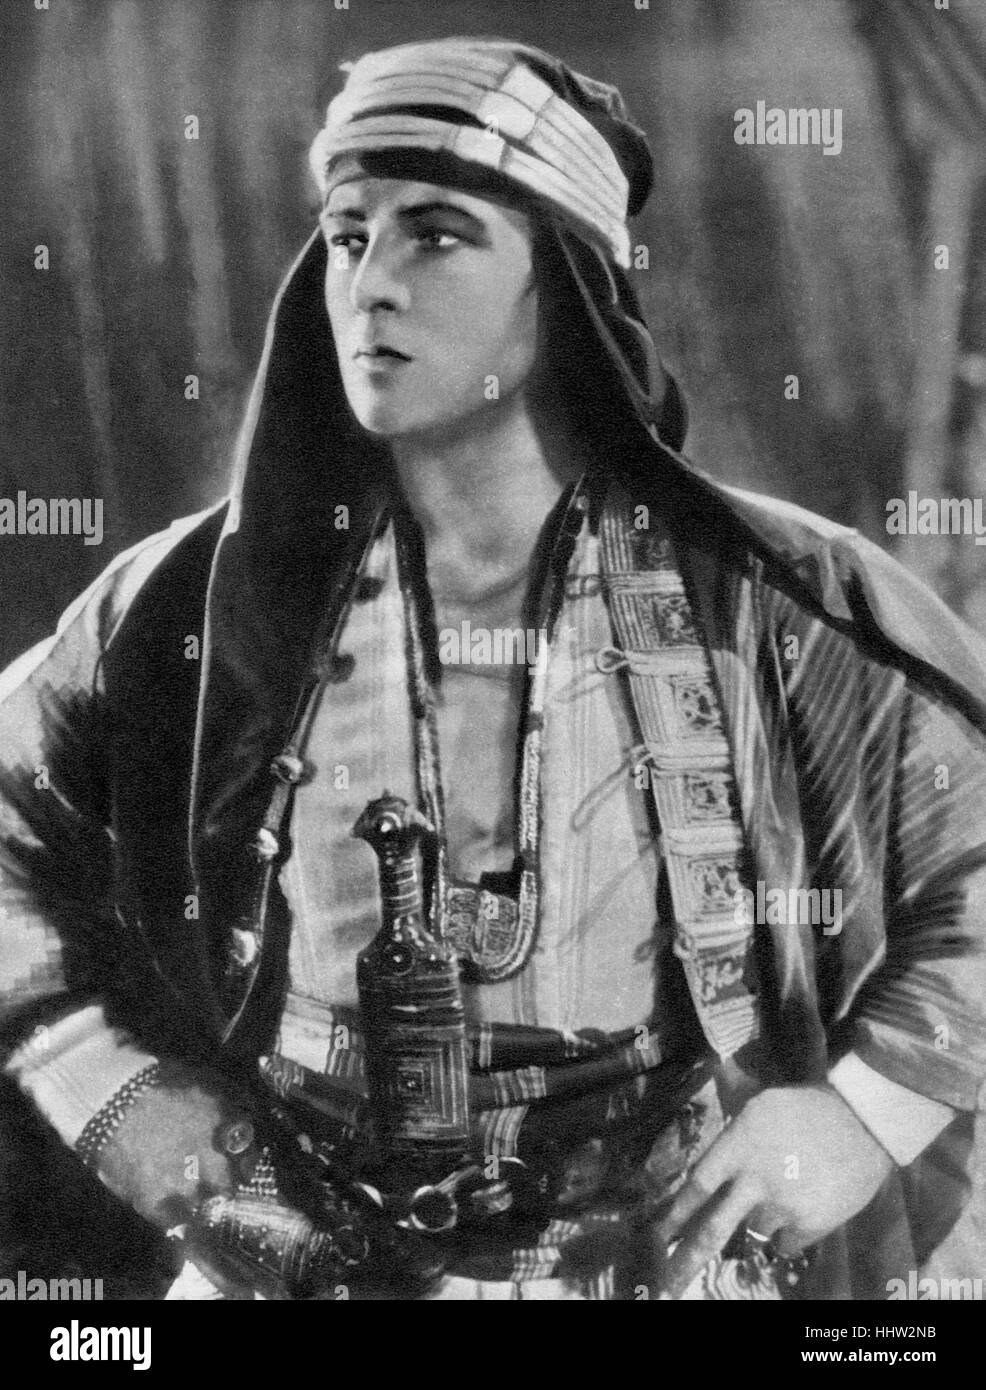 Rudolph Valentino (6 mai 1895 - 23 août 1926), acteur américain né italien dans les films muets. 1926 portrait dans le rôle de la Sheik, film muet de 1921 Banque D'Images